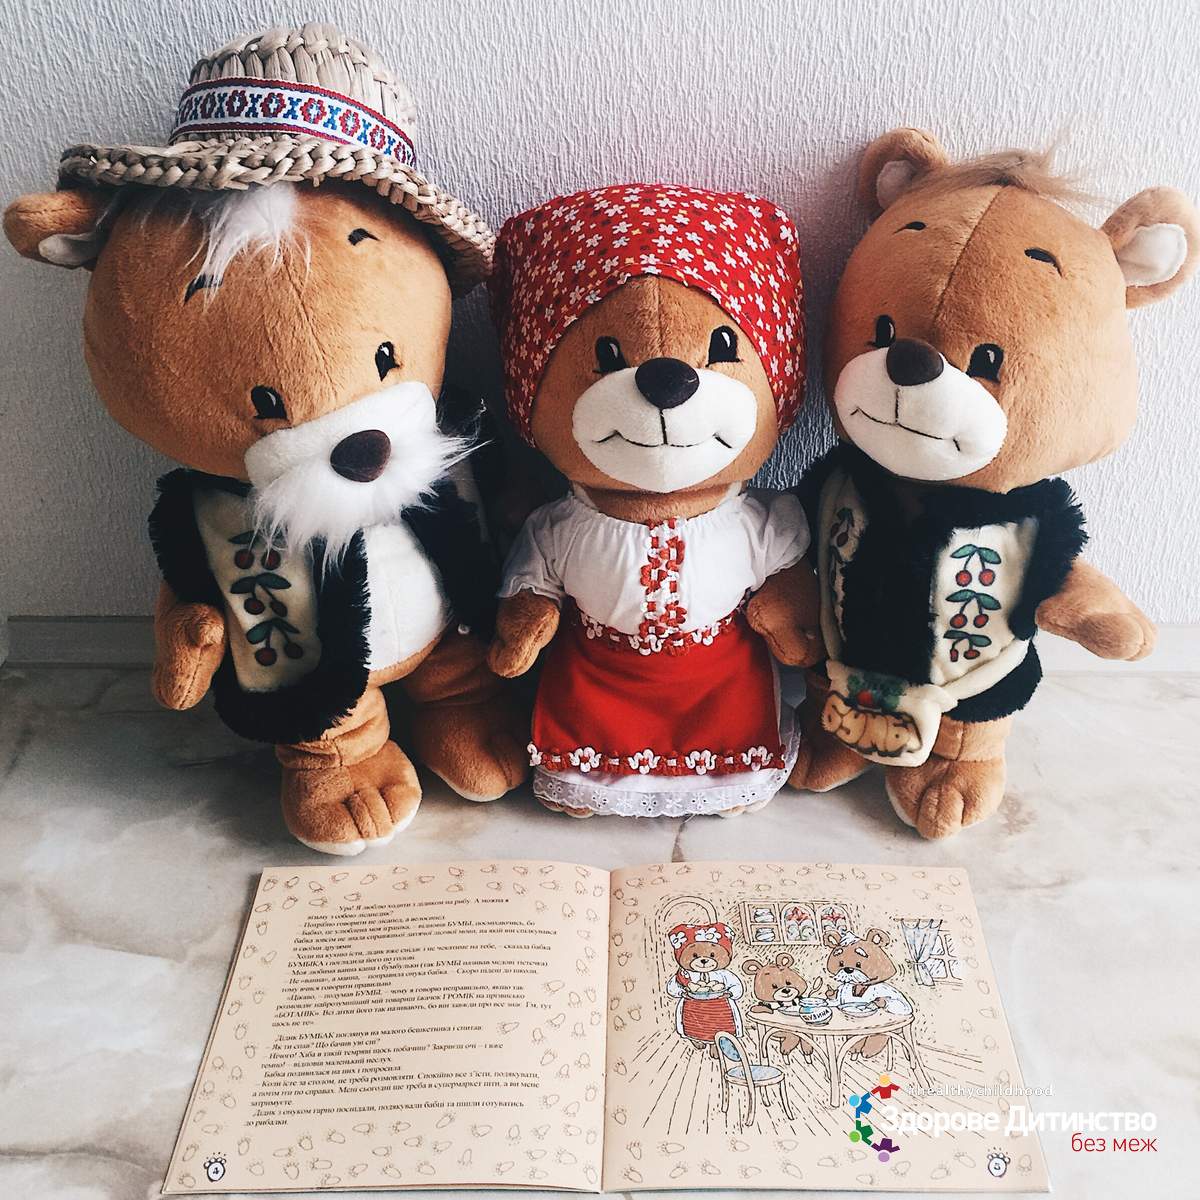 Лот №11: Ексклюзивна дитяча книга «Пригоди медведика Бумбі» головні персонажі з якої відтворені у вигляді чарівних плюшевих іграшок